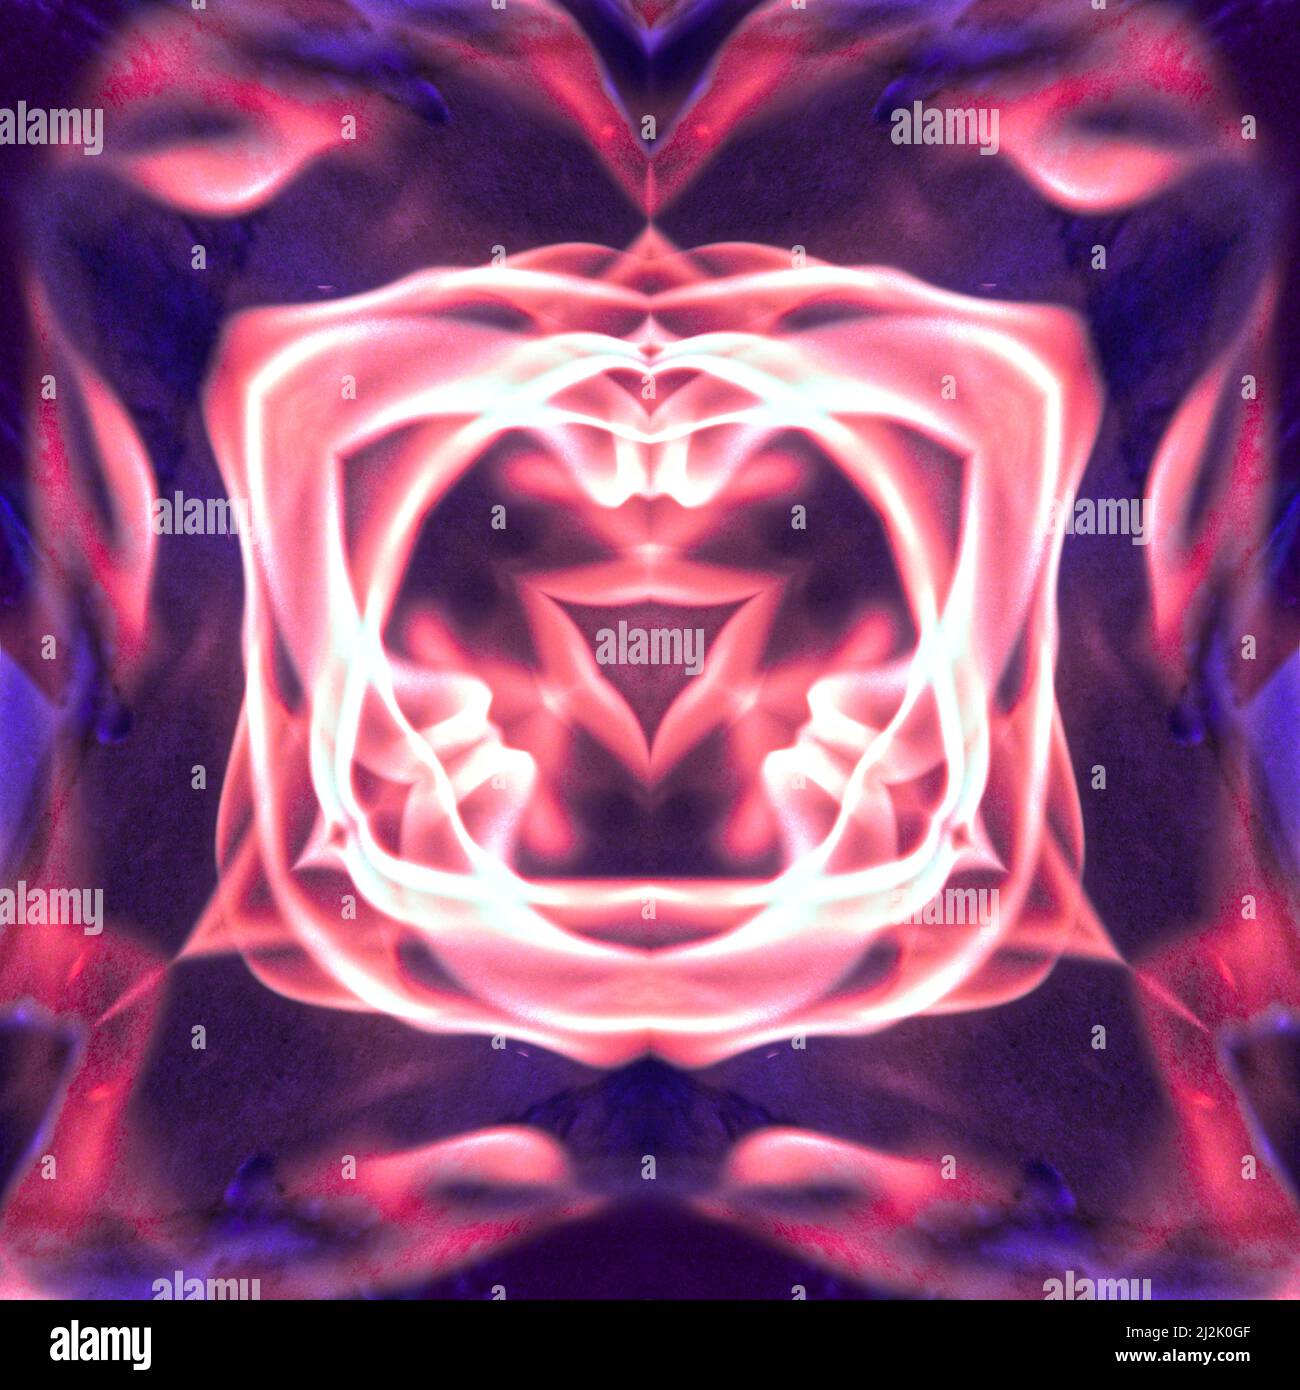 Miroir fractal rose et violet, résumé des flammes brûlantes Banque D'Images